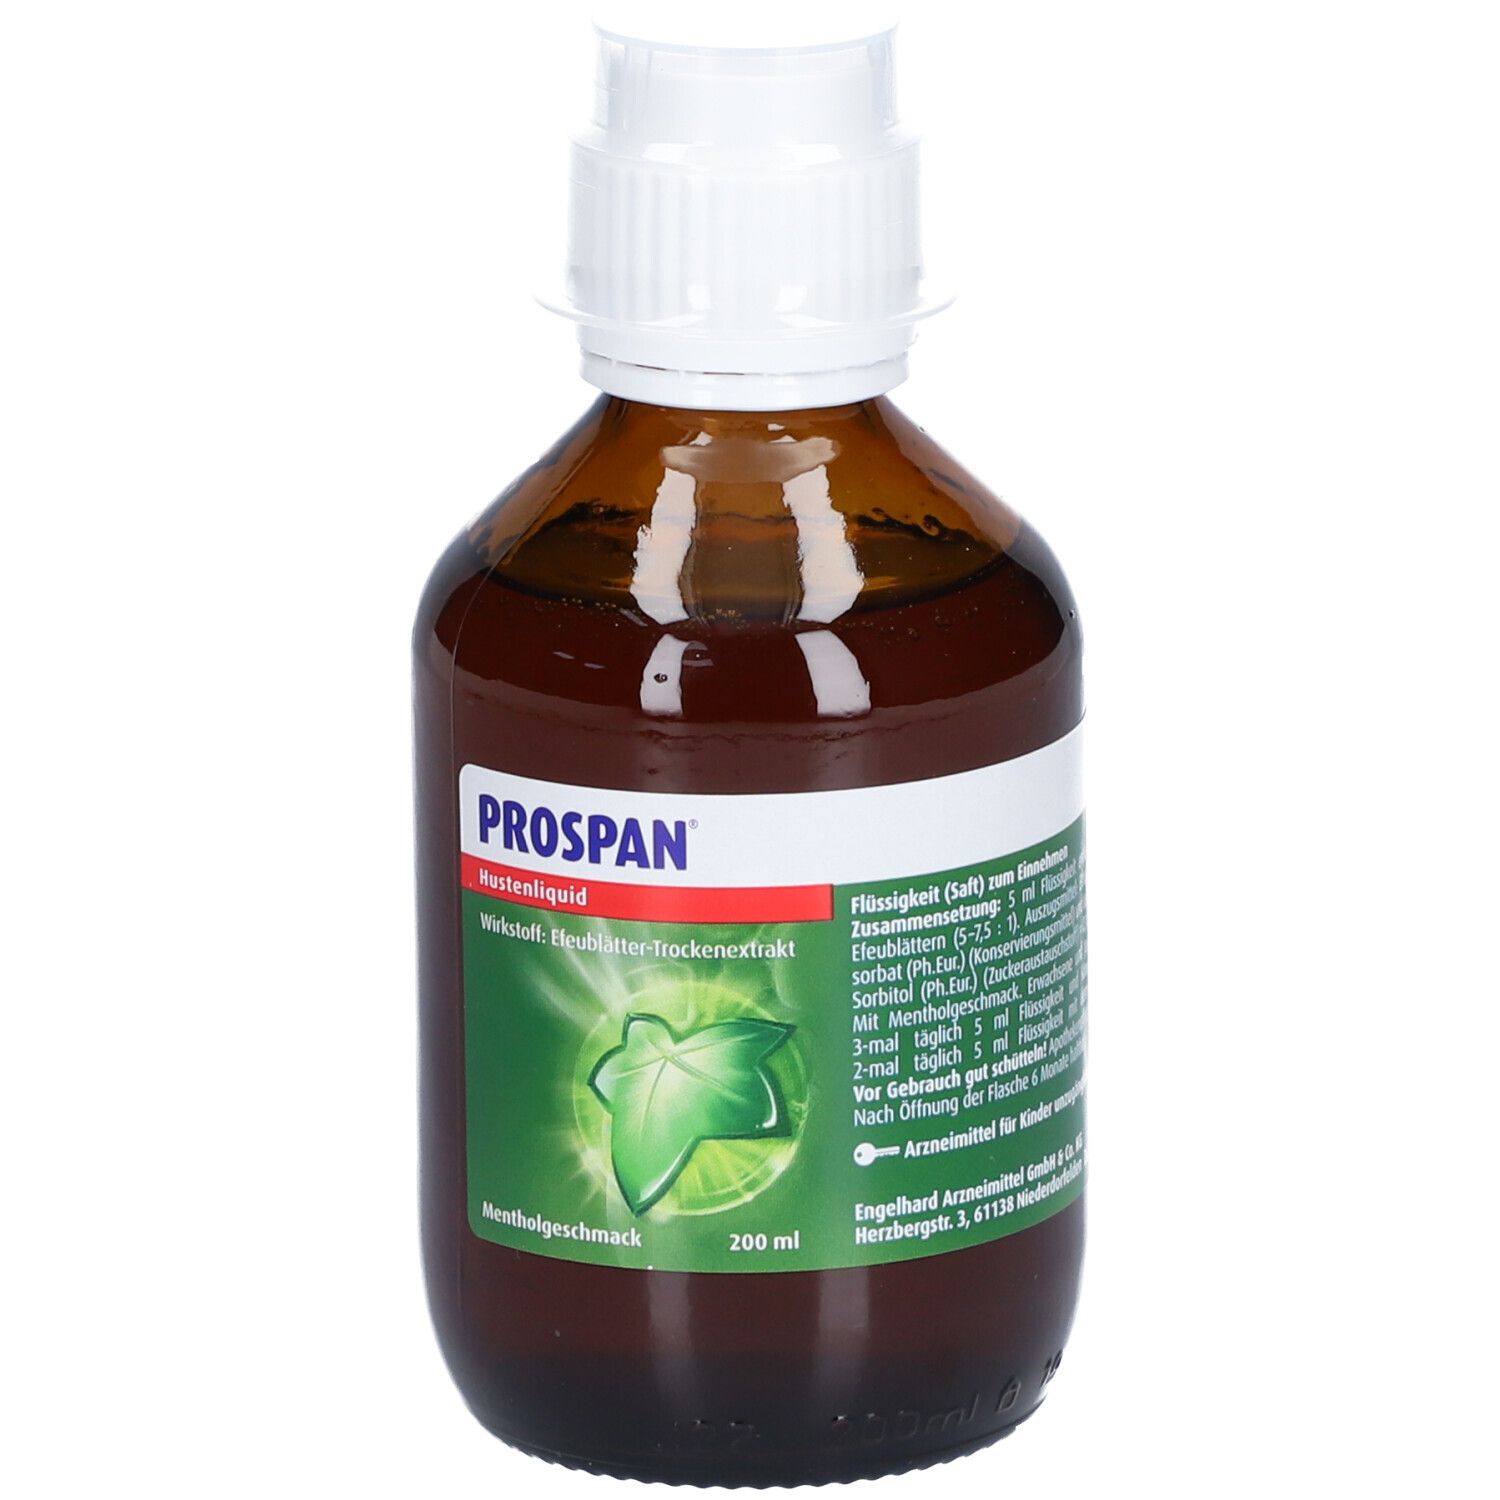 Prospan® Hustenliquid, für Erwachsene